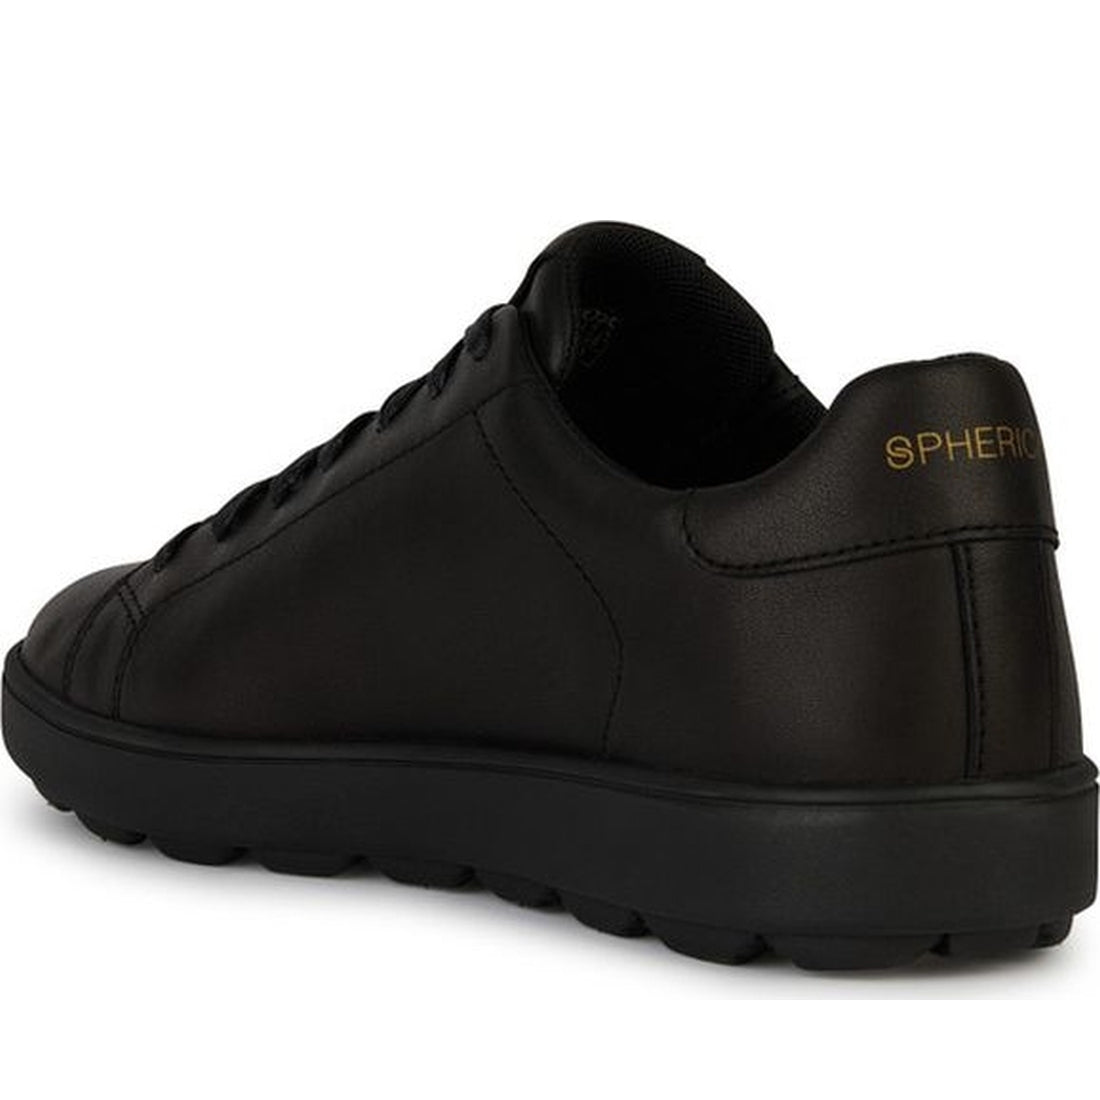 spherica ecub-1 sneakers black